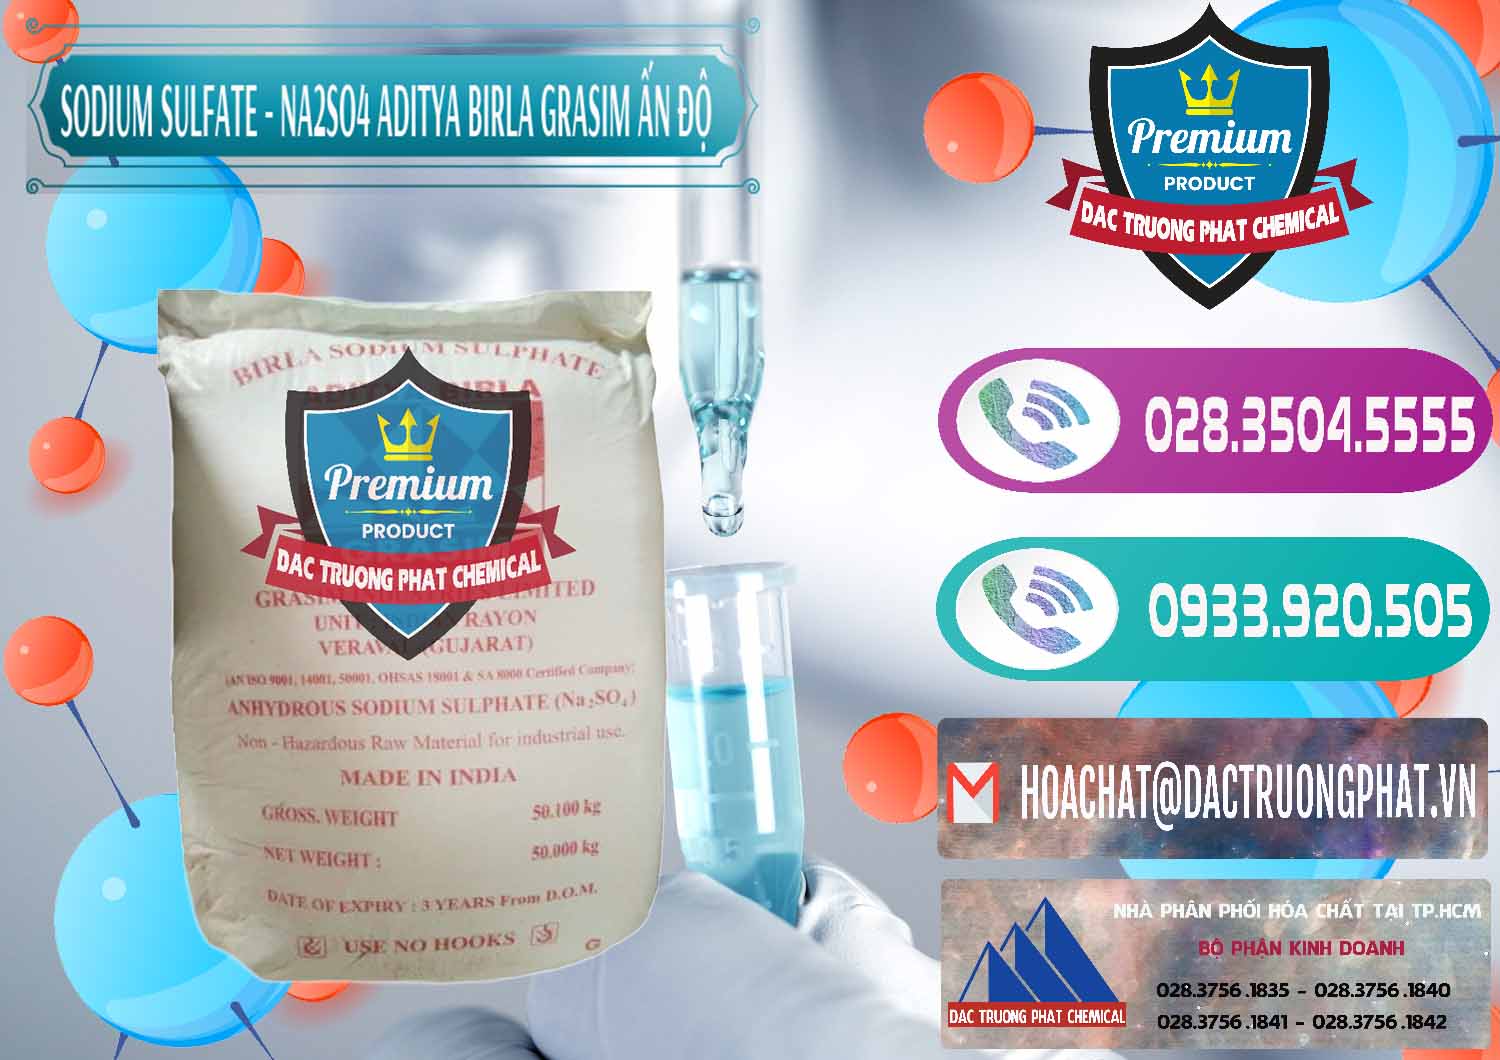 Cty chuyên bán - phân phối Sodium Sulphate - Muối Sunfat Na2SO4 Grasim Ấn Độ India - 0356 - Chuyên cung cấp - phân phối hóa chất tại TP.HCM - hoachatxulynuoc.com